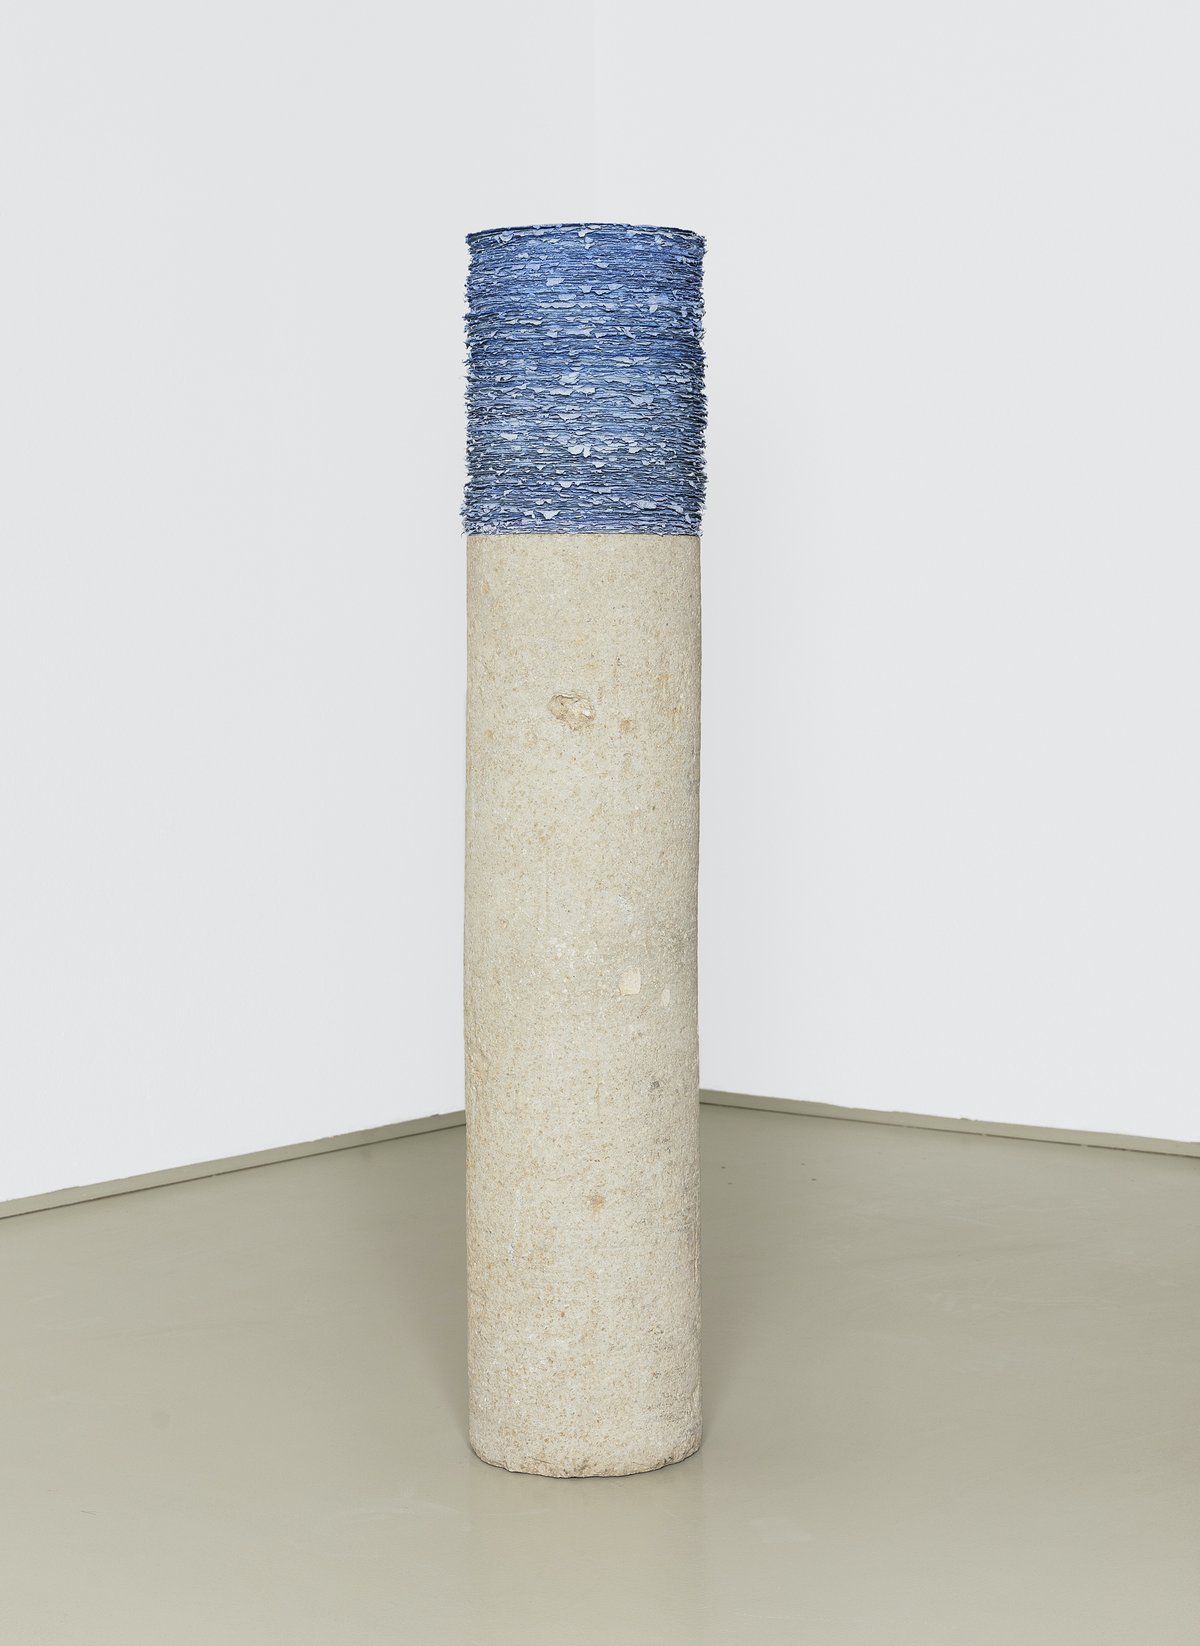 helmut dirnaichner, &quot;sedimente lapislazuli&quot; (1996), h: 134, d: 27 cm, lapis lazuli, cellulose, limestone